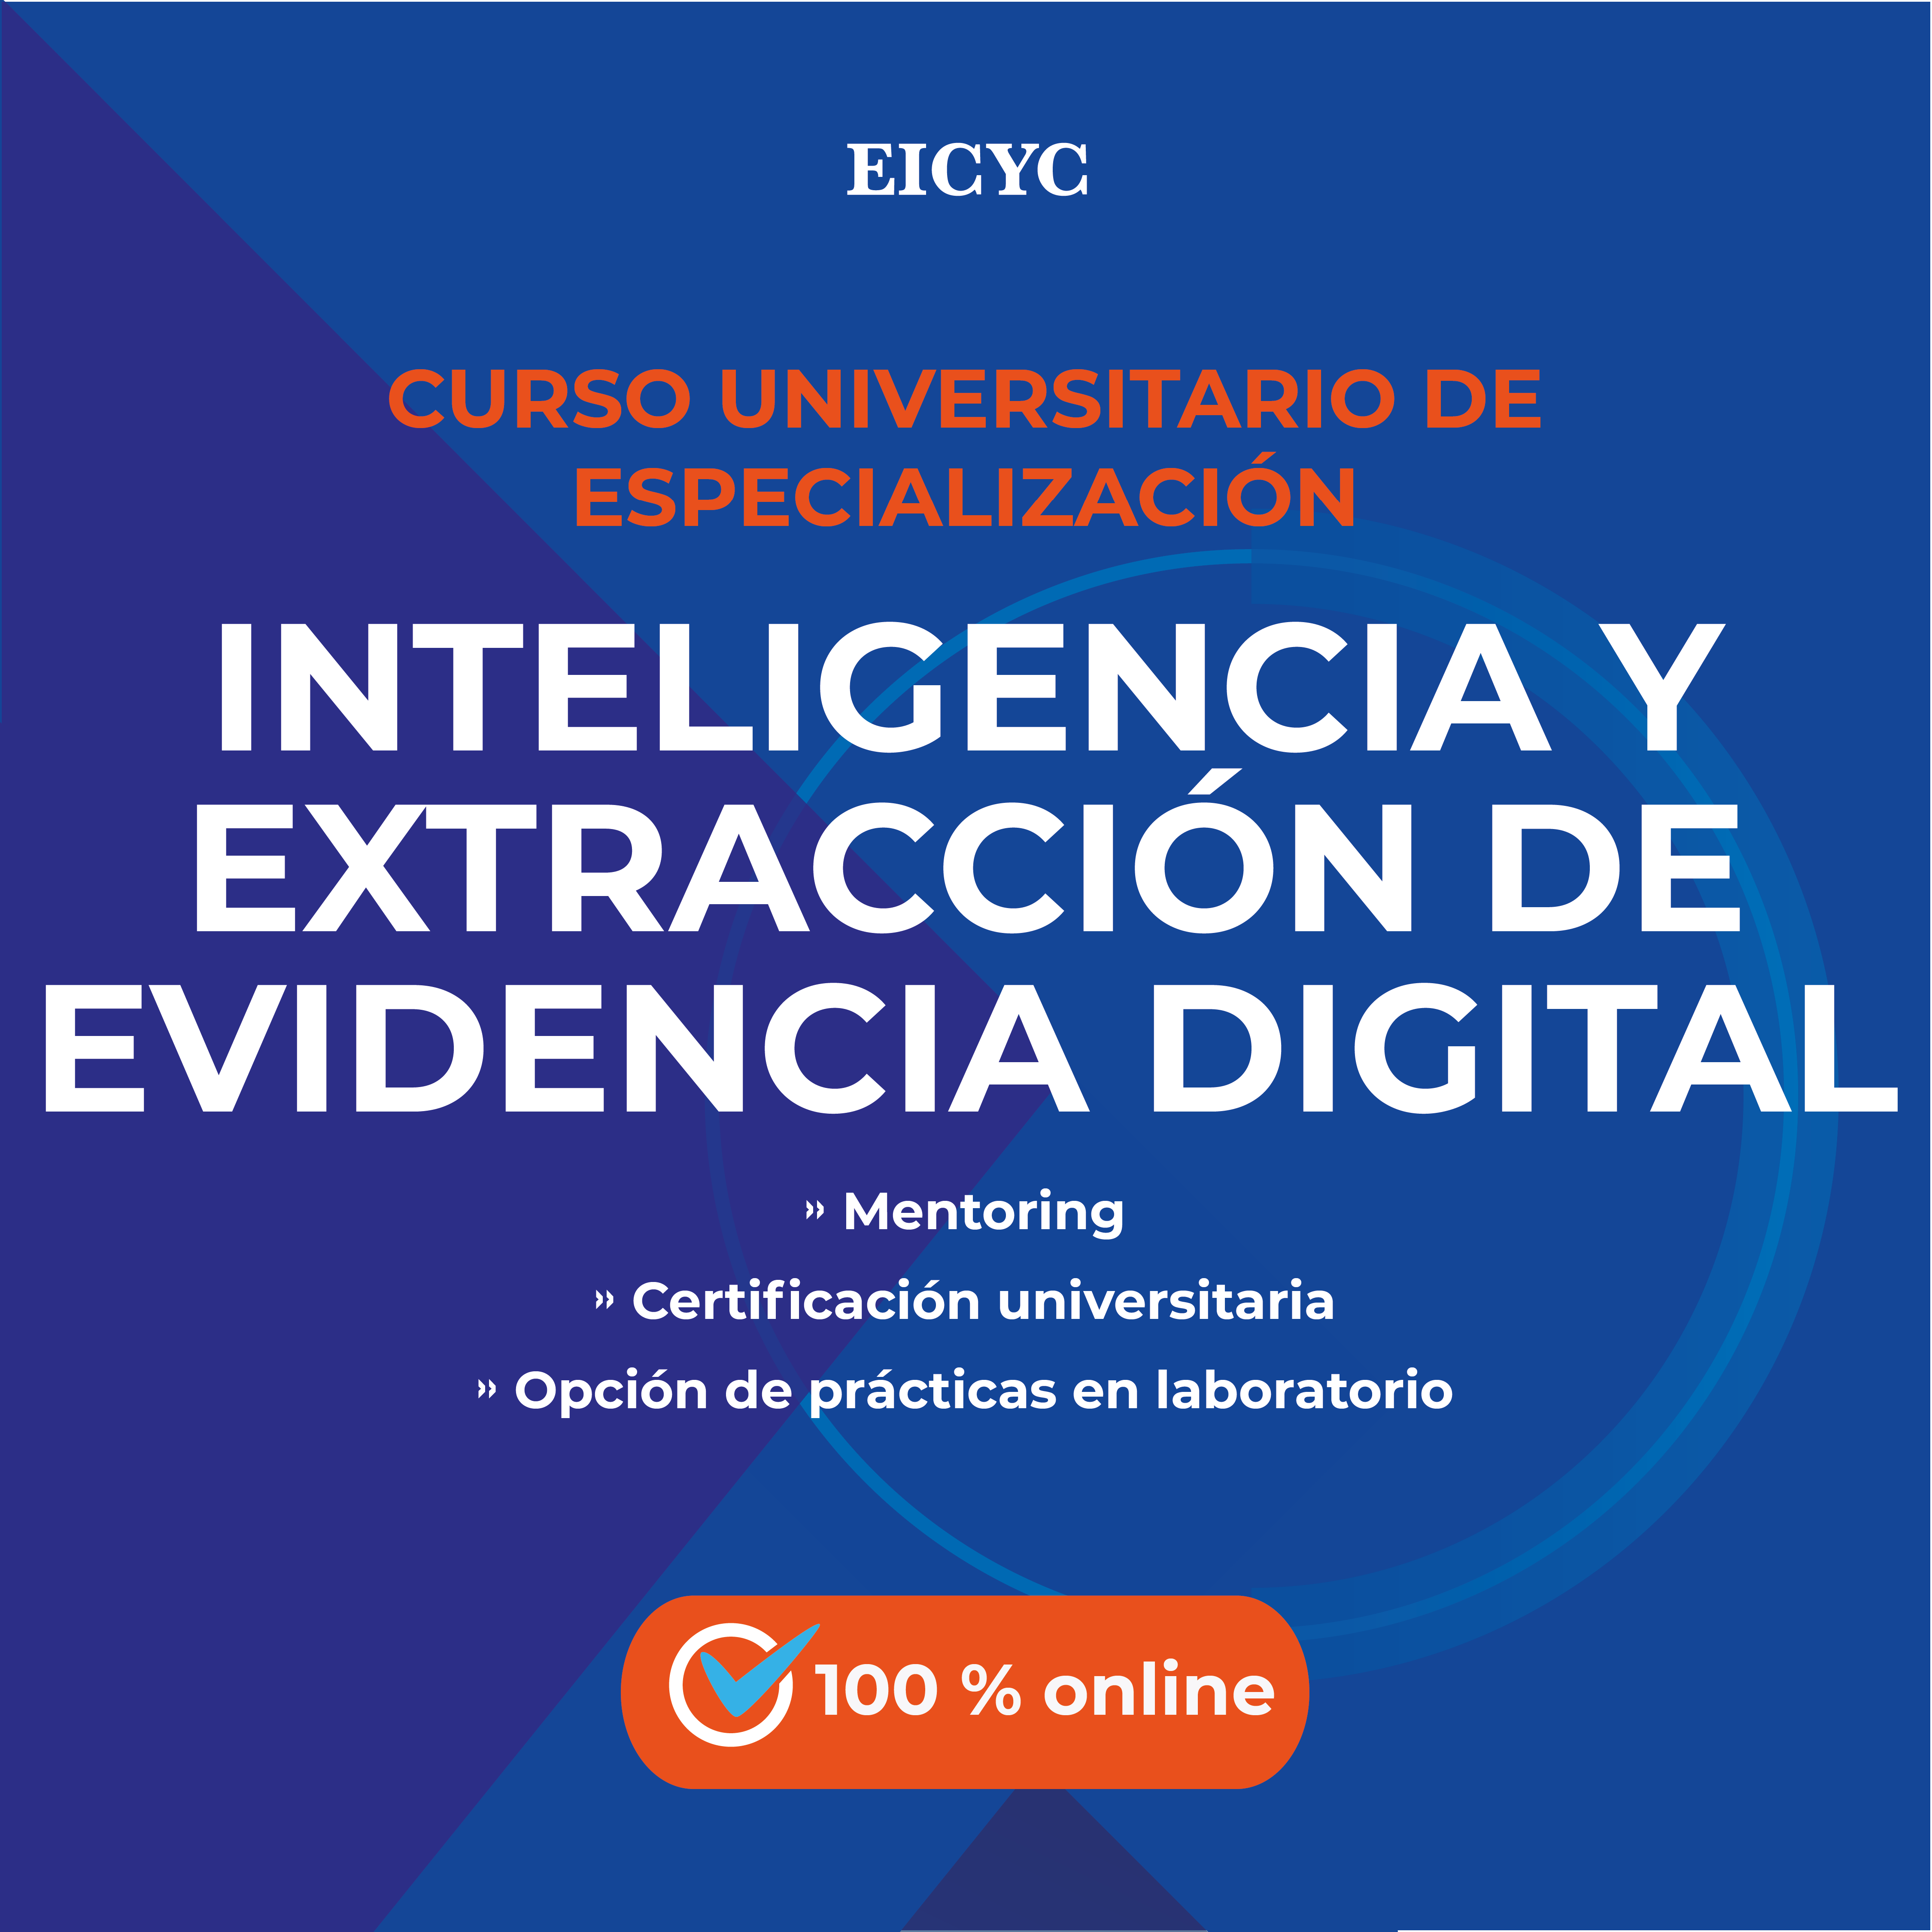 Curso universitario de especializacion en inteligencia y extraccion de evidencia digital EICYC